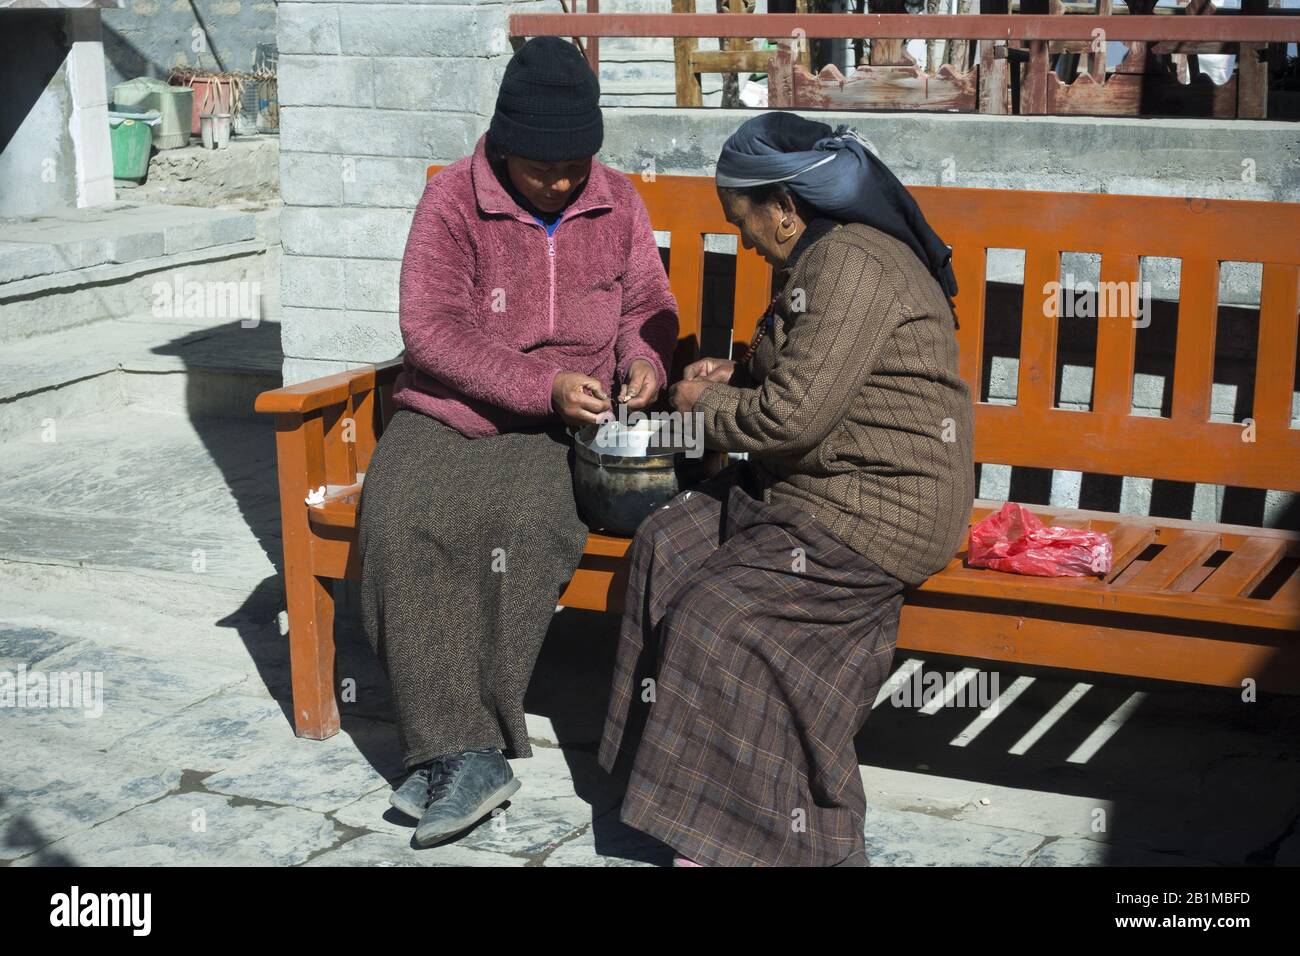 Les femmes Assises sur un banc et Faisant Des Tâches ménagères sur un soleil Chaud au Népal Himalaya Mountain Village Banque D'Images